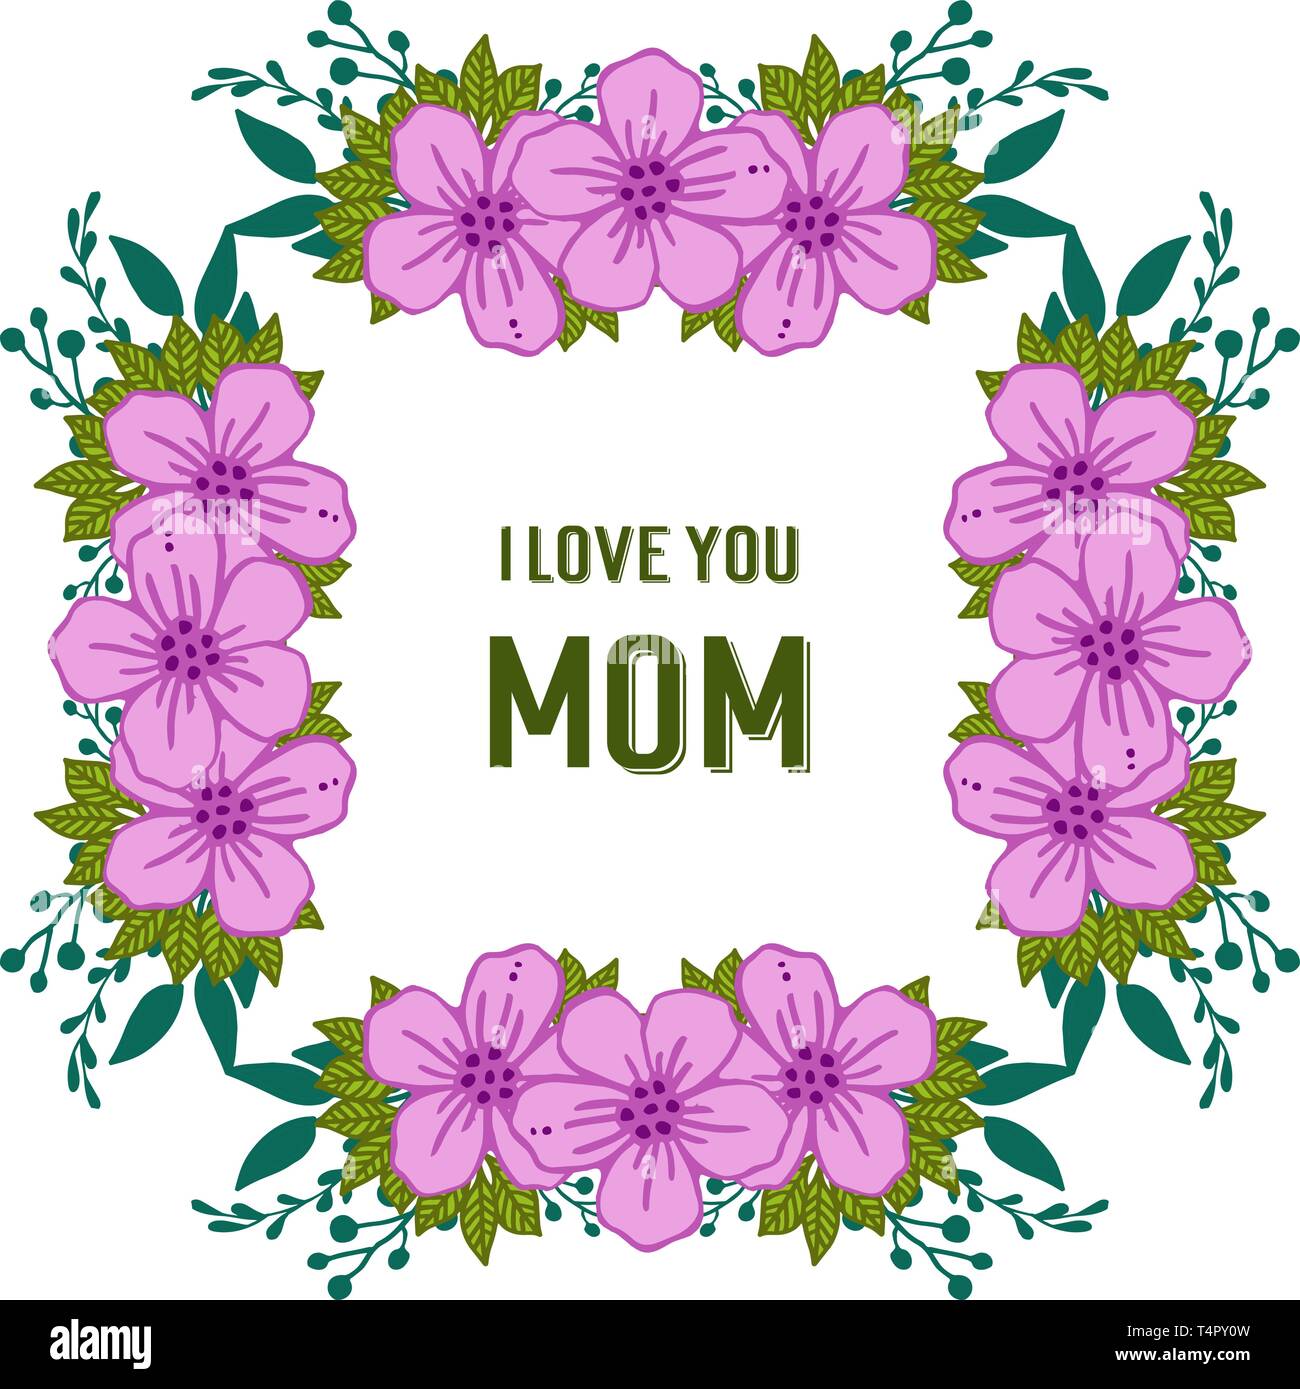 Vector illustration i love you mom for beauty purple flower frame ...